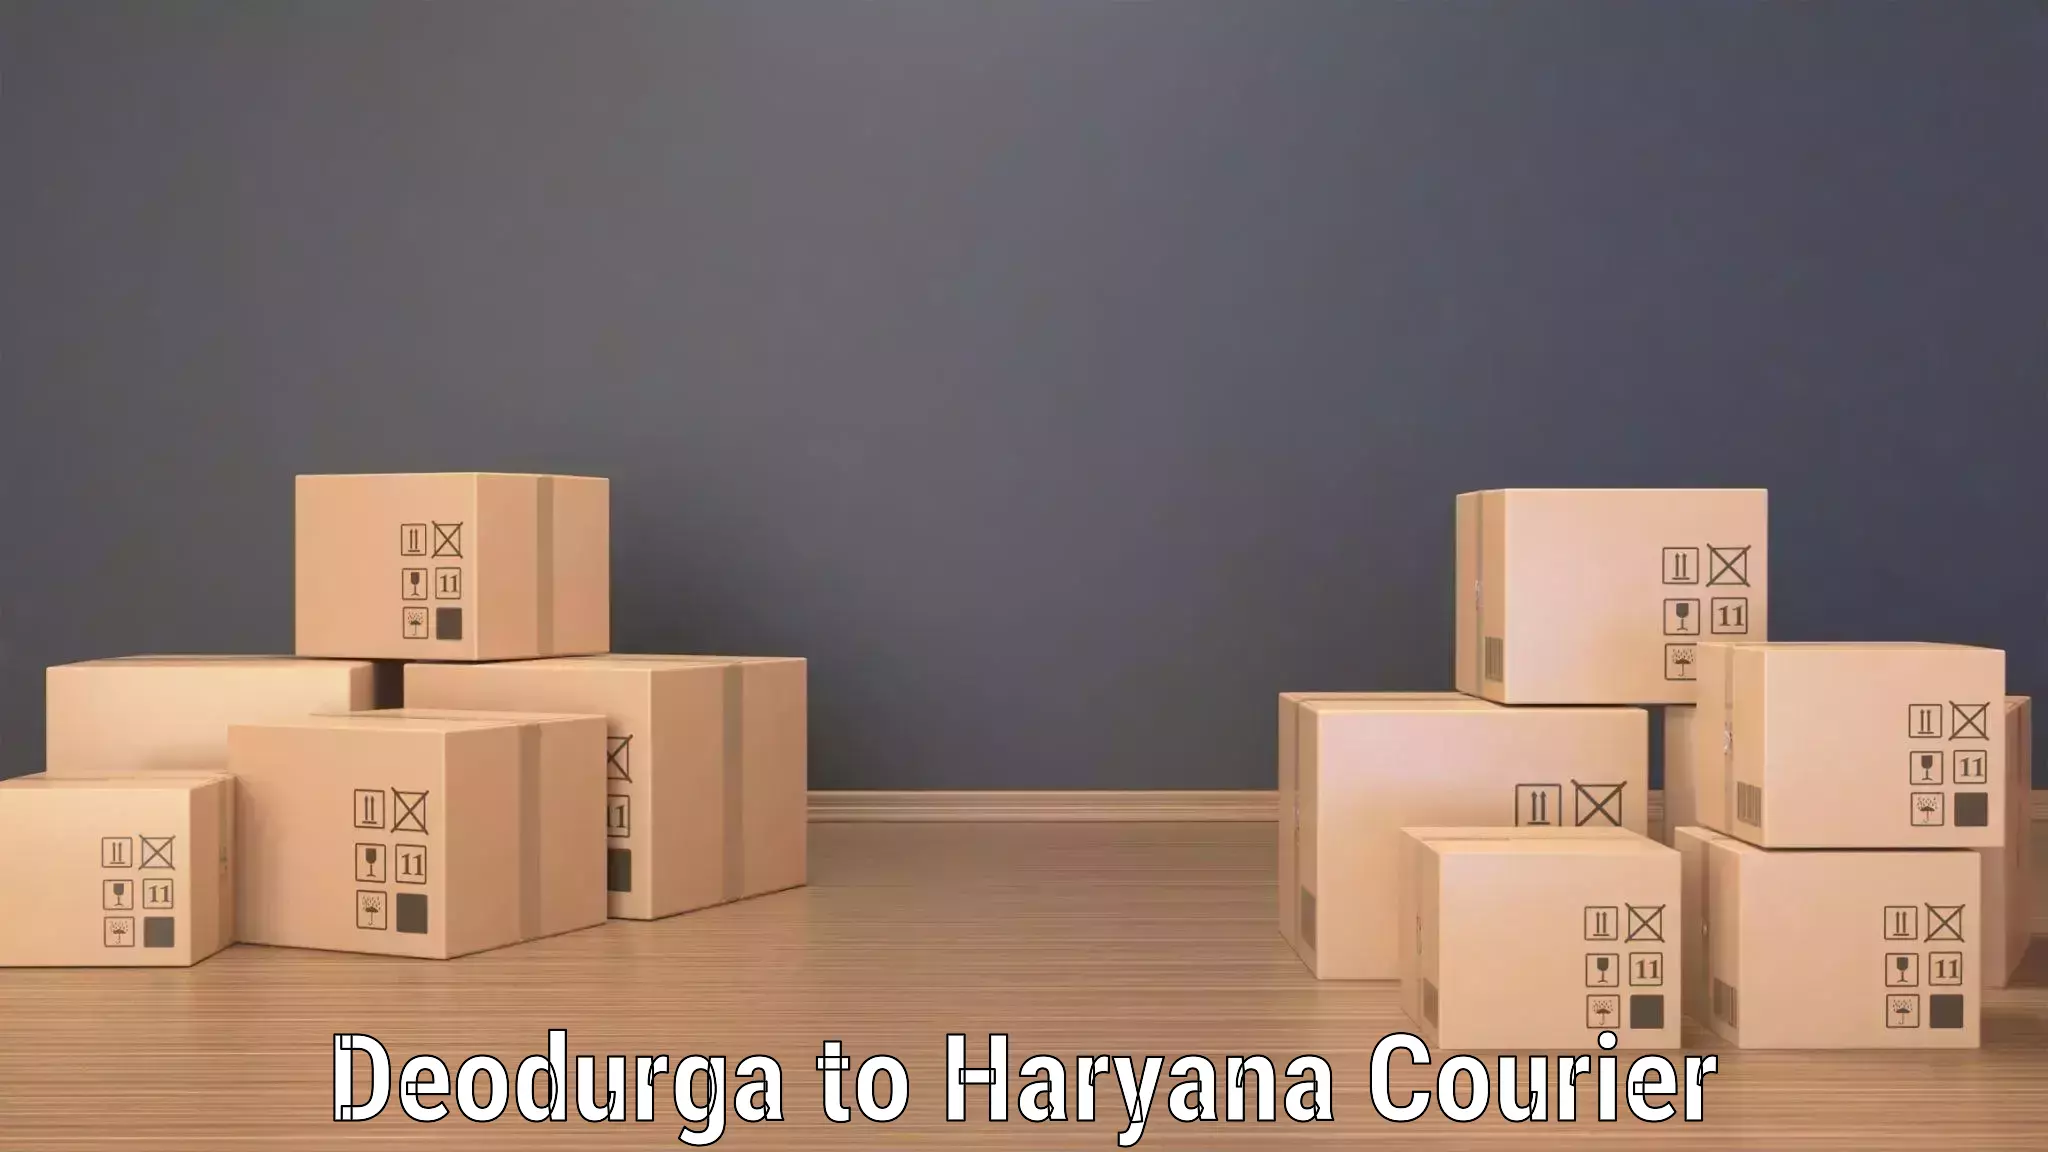 Custom shipping services Deodurga to Chaudhary Charan Singh Haryana Agricultural University Hisar